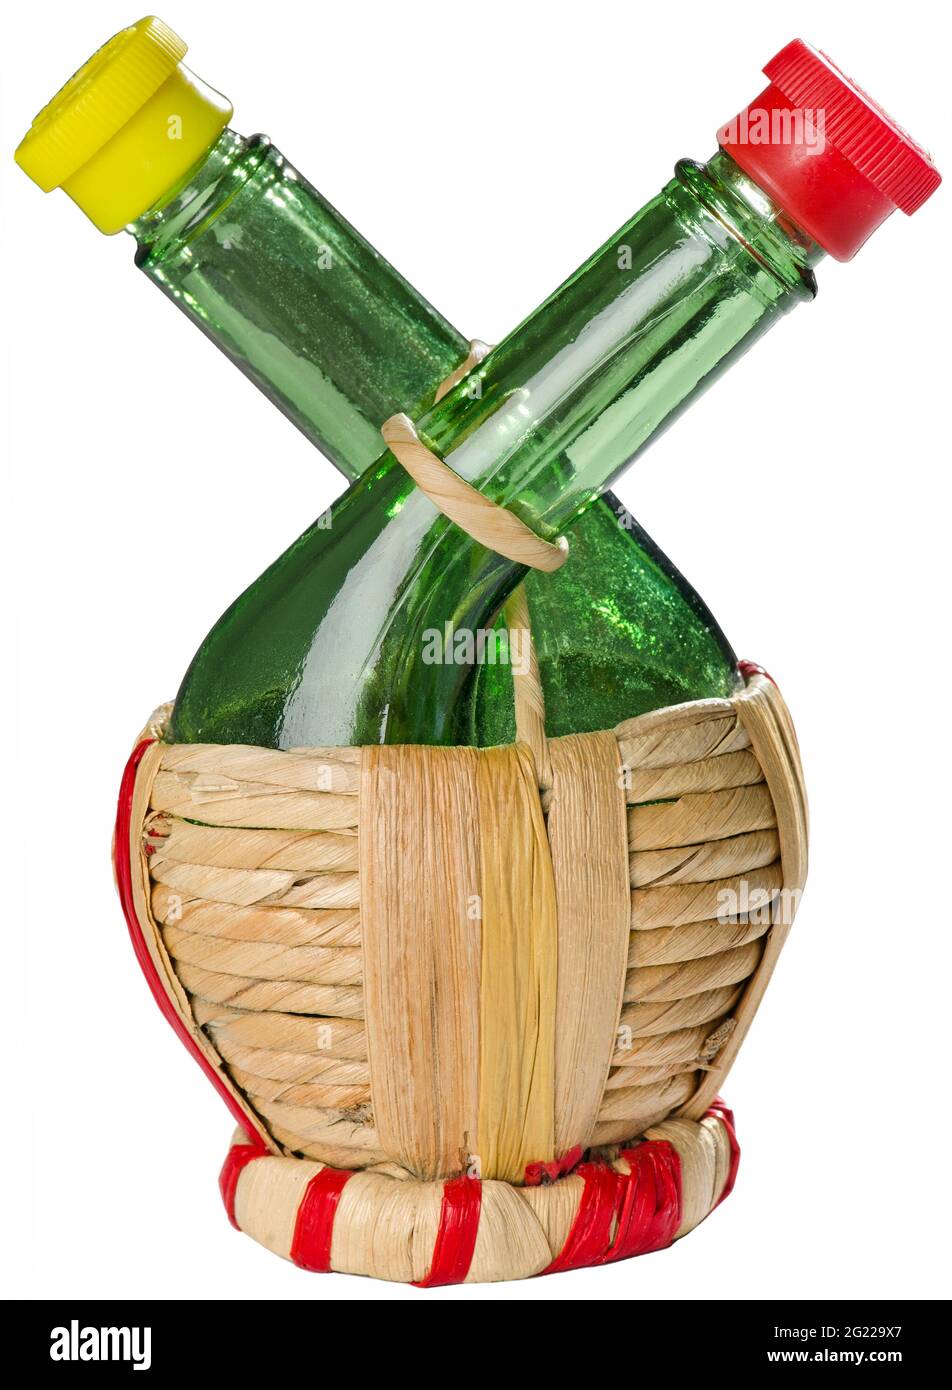 Lebensmittel, Essig und Öl, Flasche mit separaten Trinkschnäpfeln, Souvenir aus Italien, Italien, um 1959, ZUSÄTZLICHE-RIGHTS-CLEARANCE-INFO-NOT-AVAILABLE Stockfoto